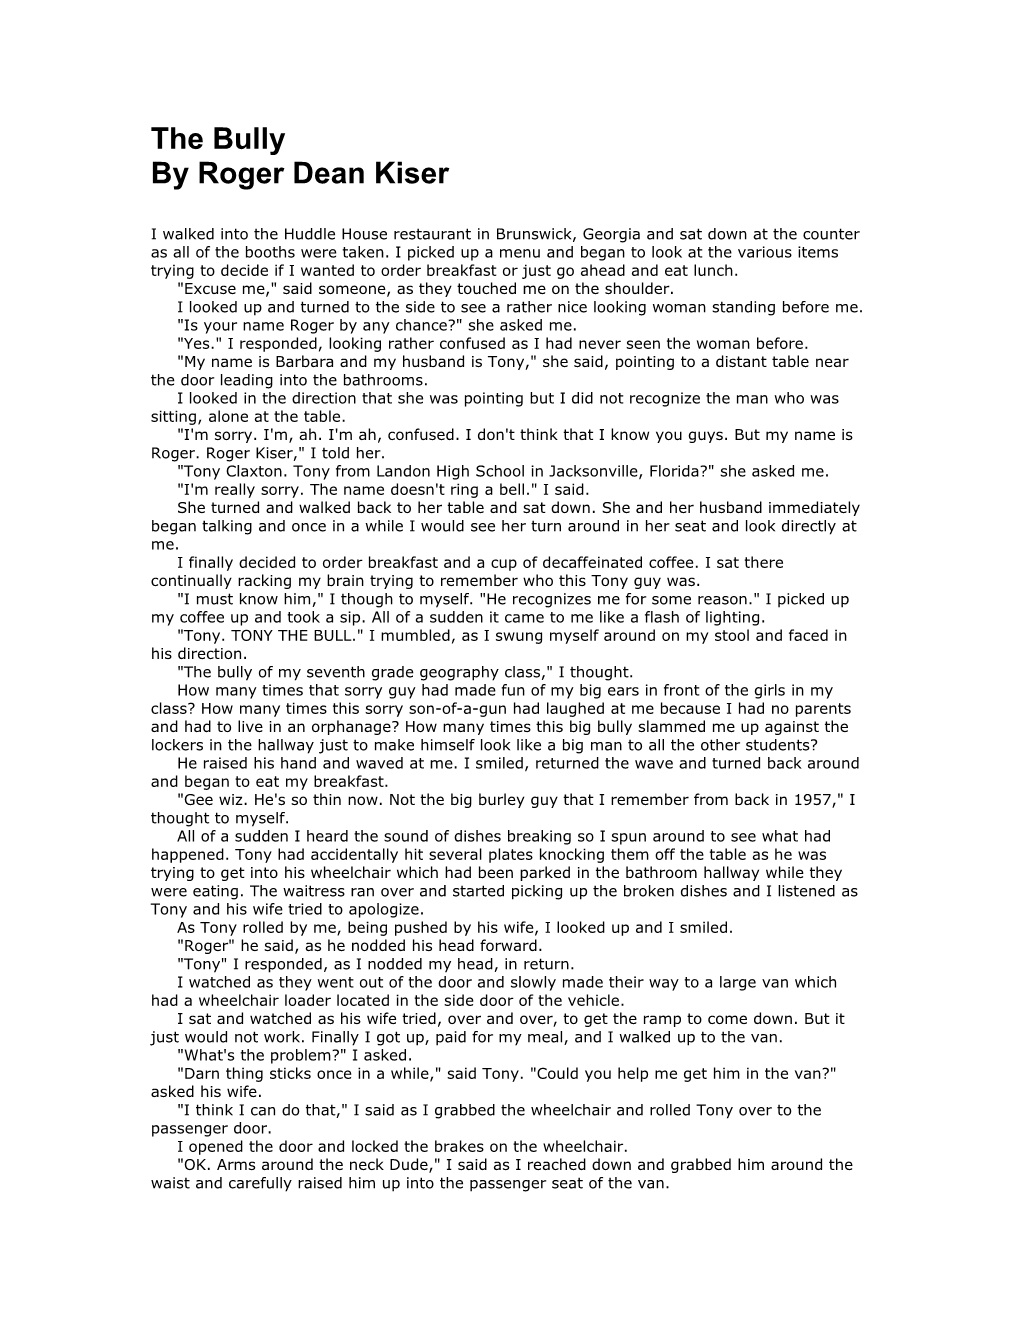 Roger Dean Kiser